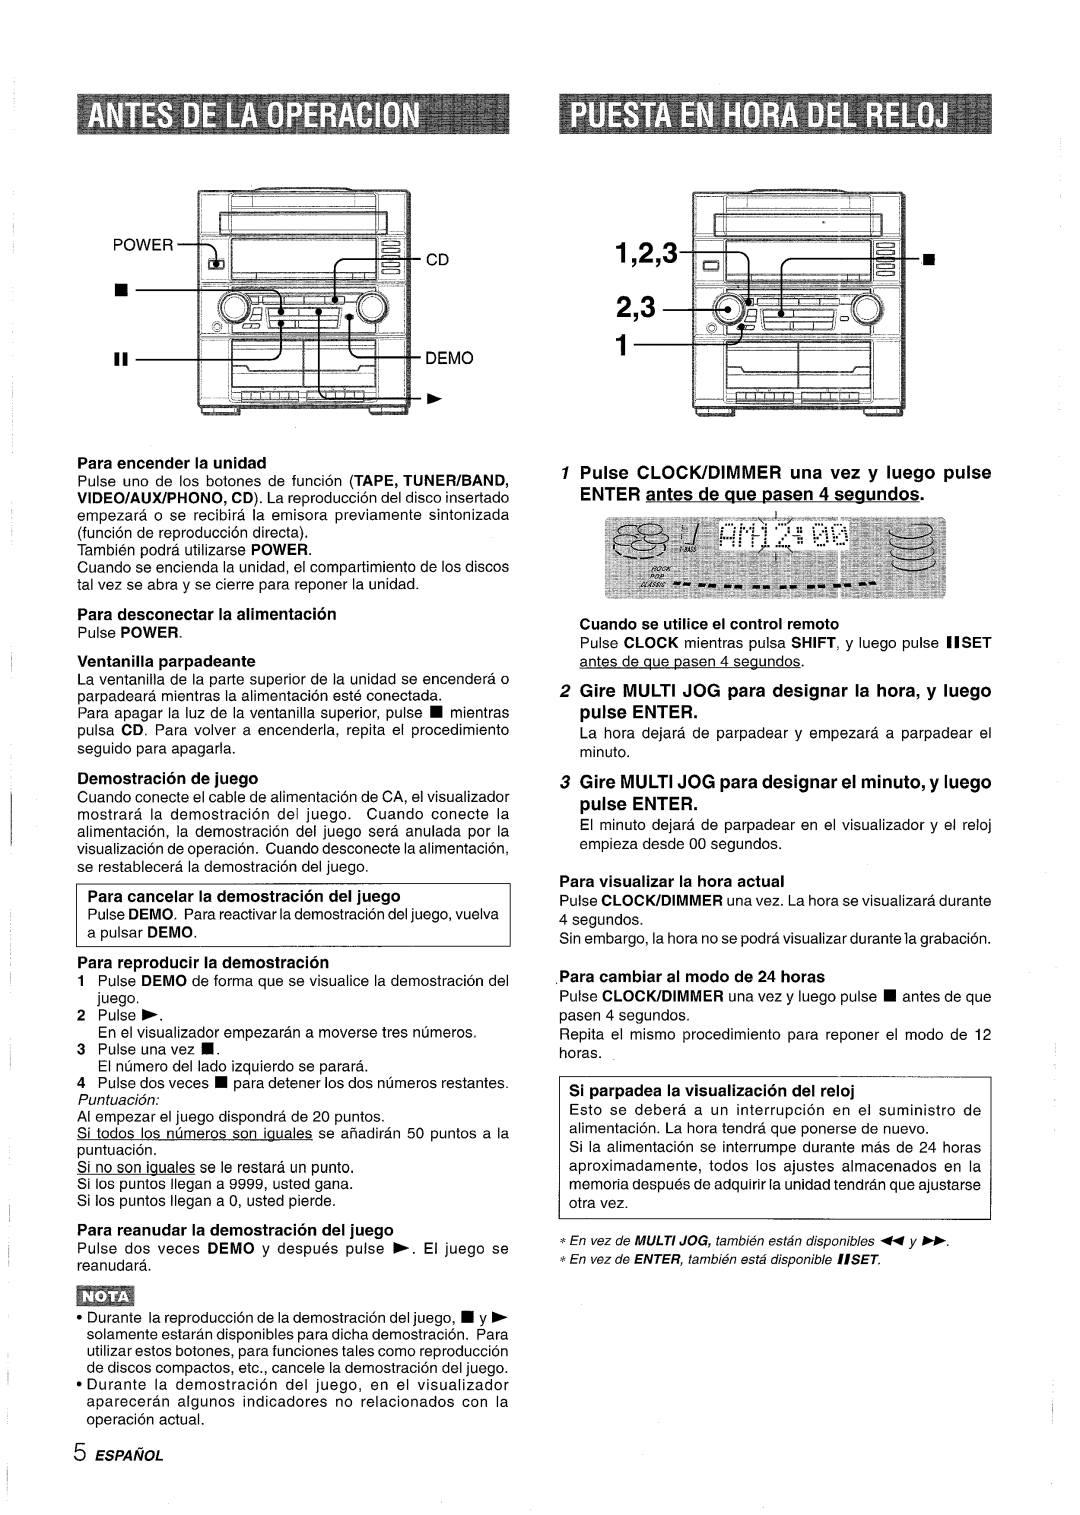 Aiwa Z-R555 manual Para encender la unidad, Para desconectar la alimentacion, Ventanilla parpadeante, Demostracion de juego 